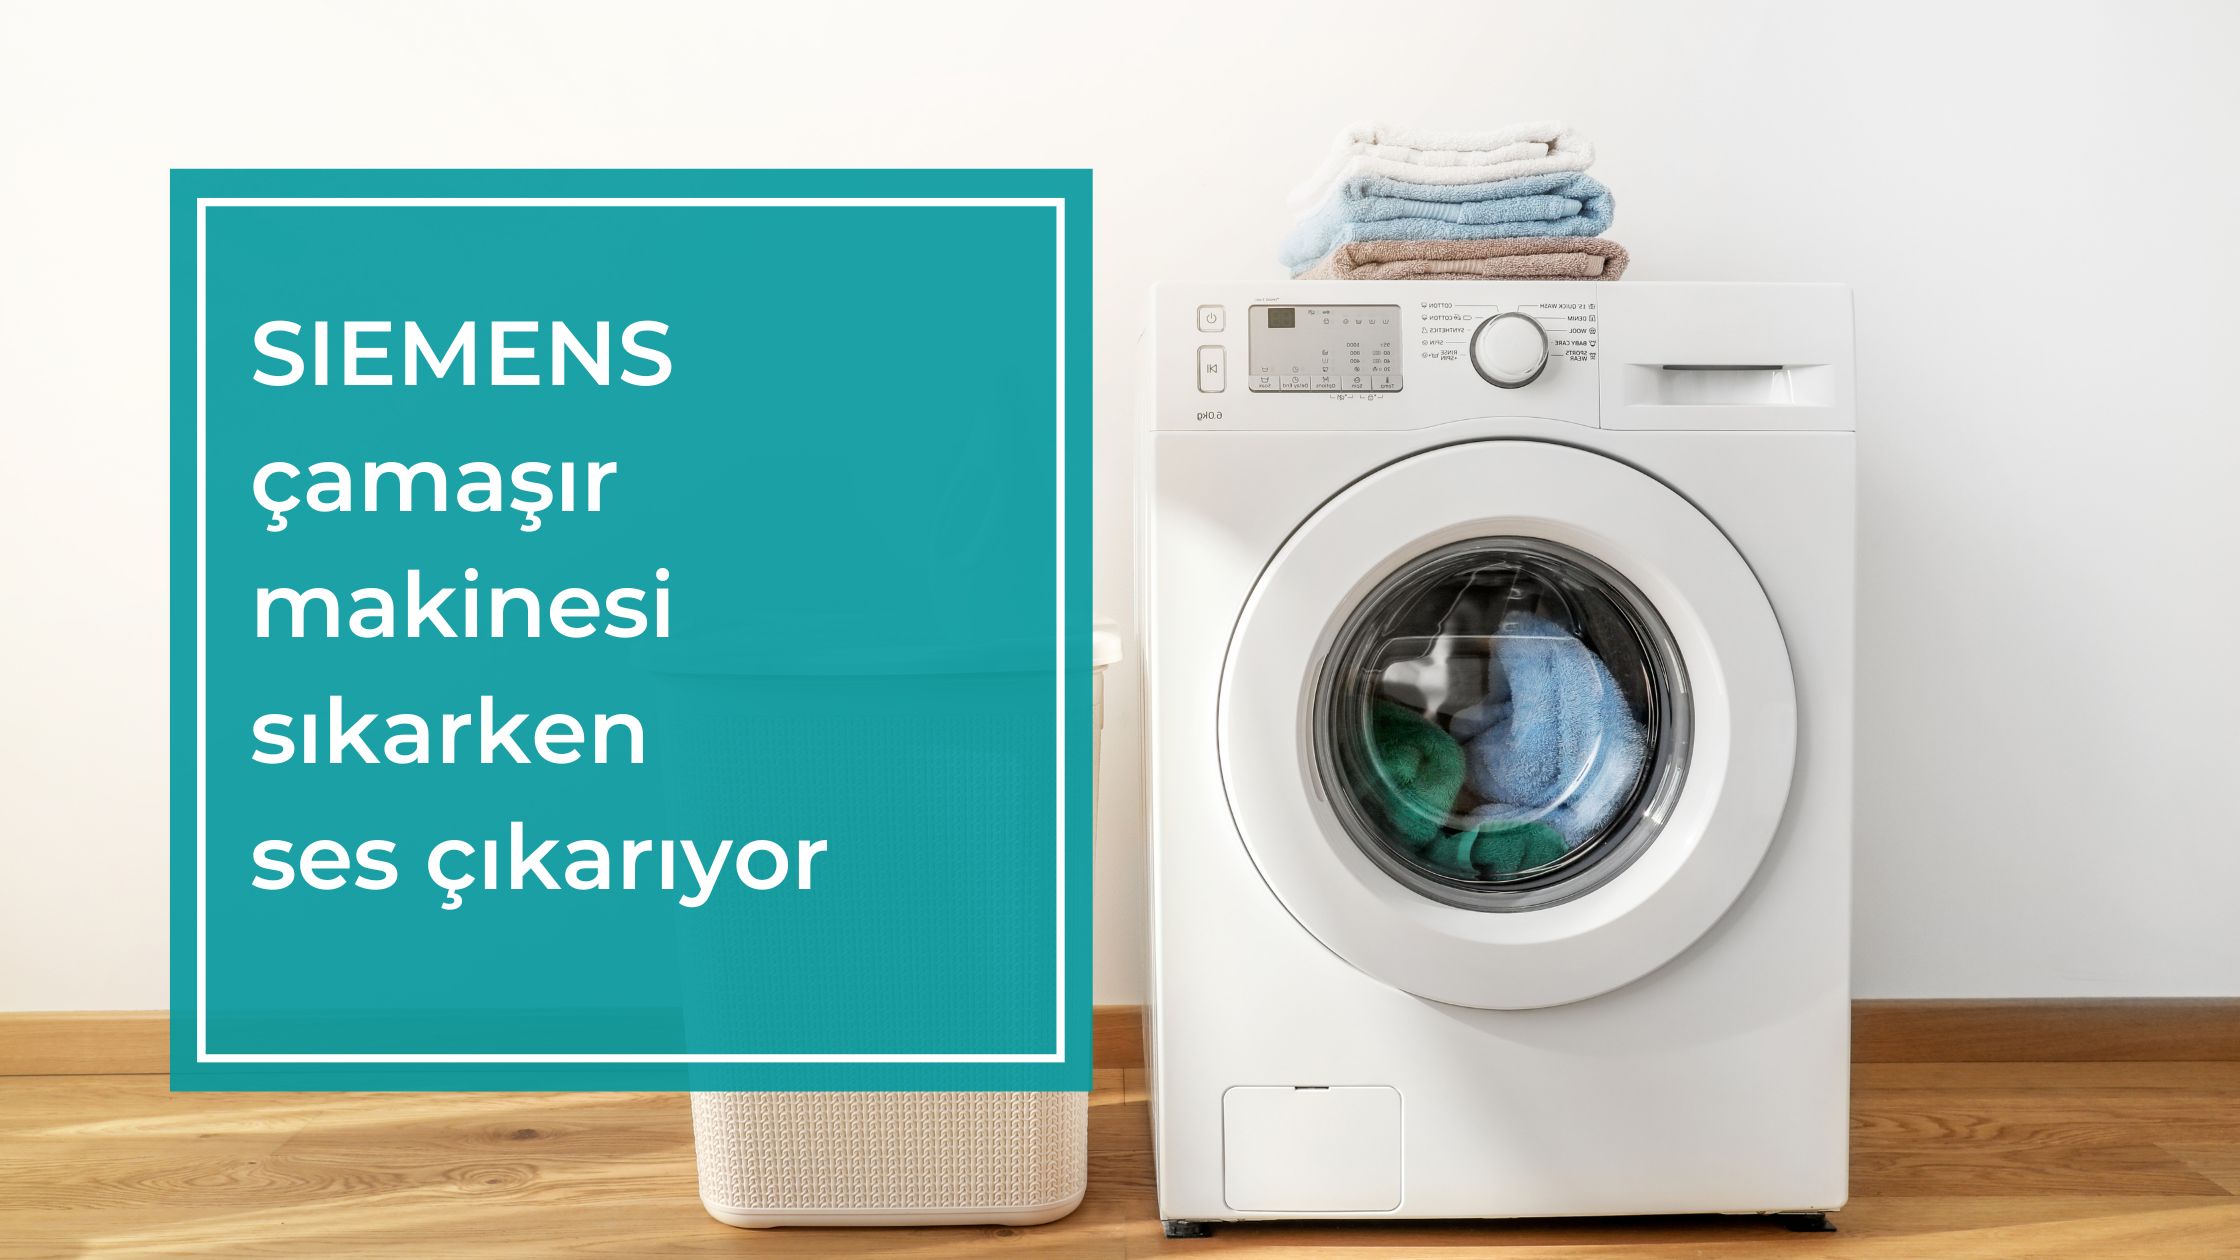 Siemens Çamaşır Makinesi Sıkarken Ses Çıkarıyor